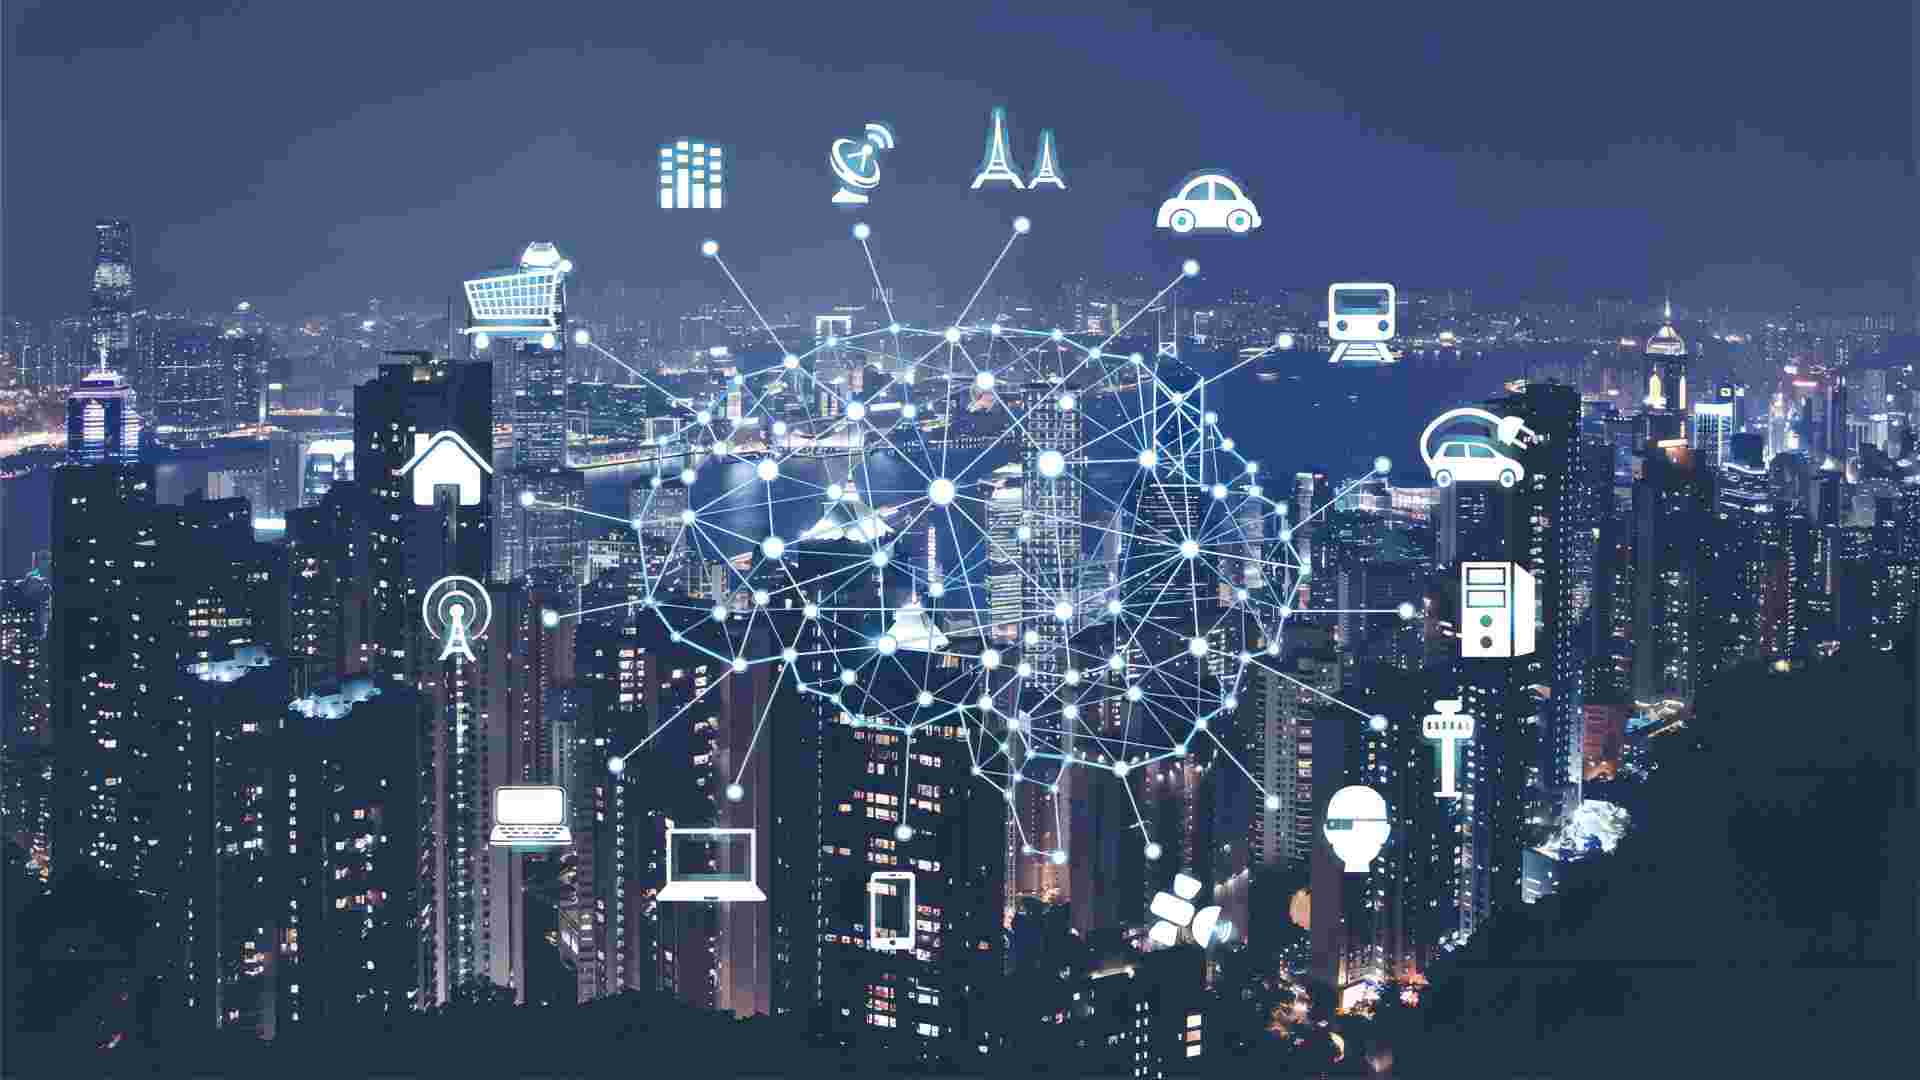 这是一张展示智慧城市概念的图片，夜景中的城市上方覆盖着符号和连接线，代表数据和网络连接。